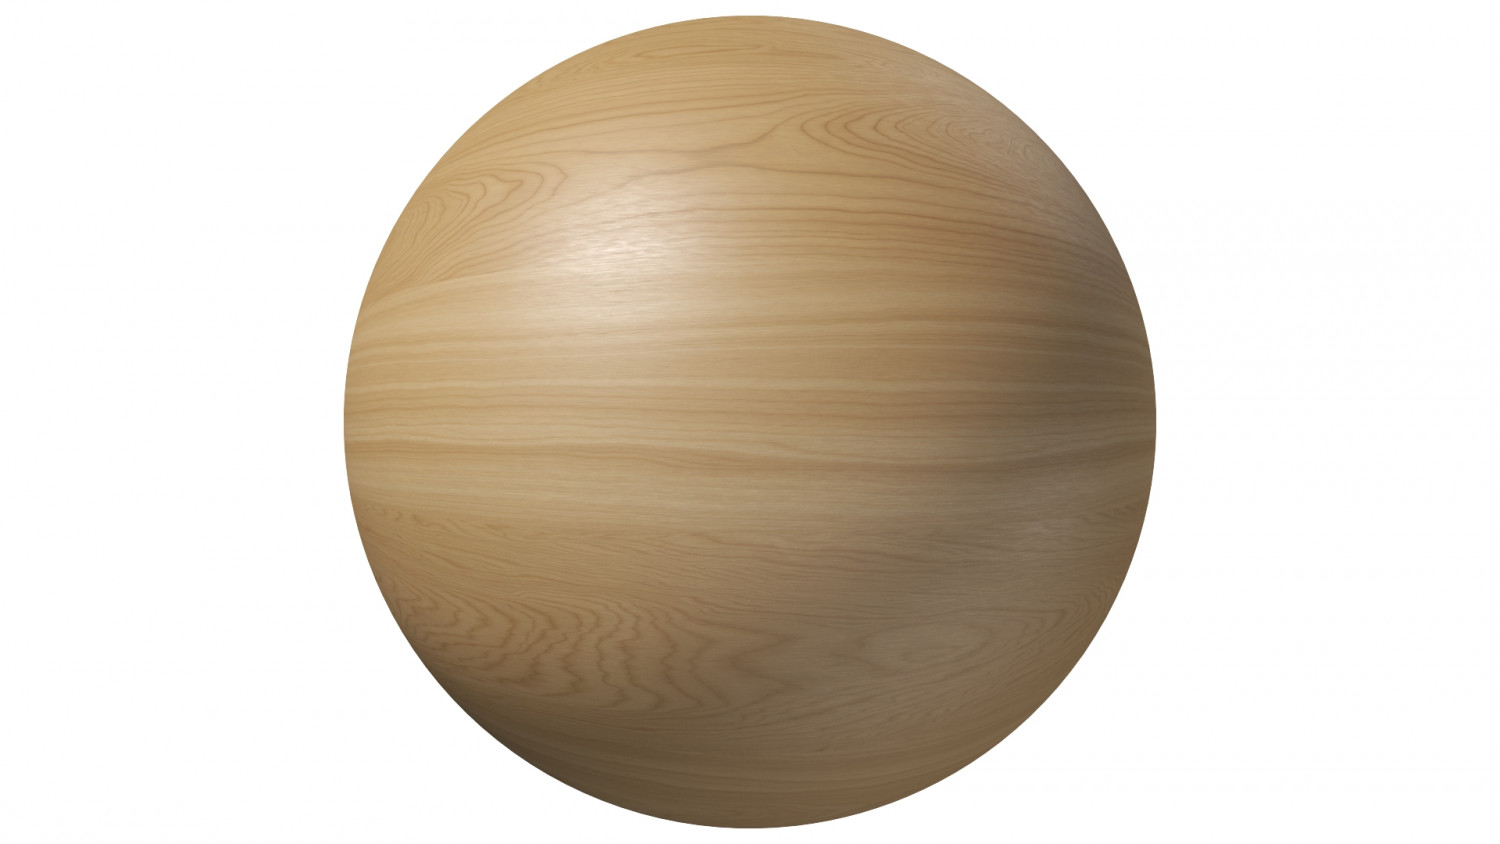 Maple wood veneer texture